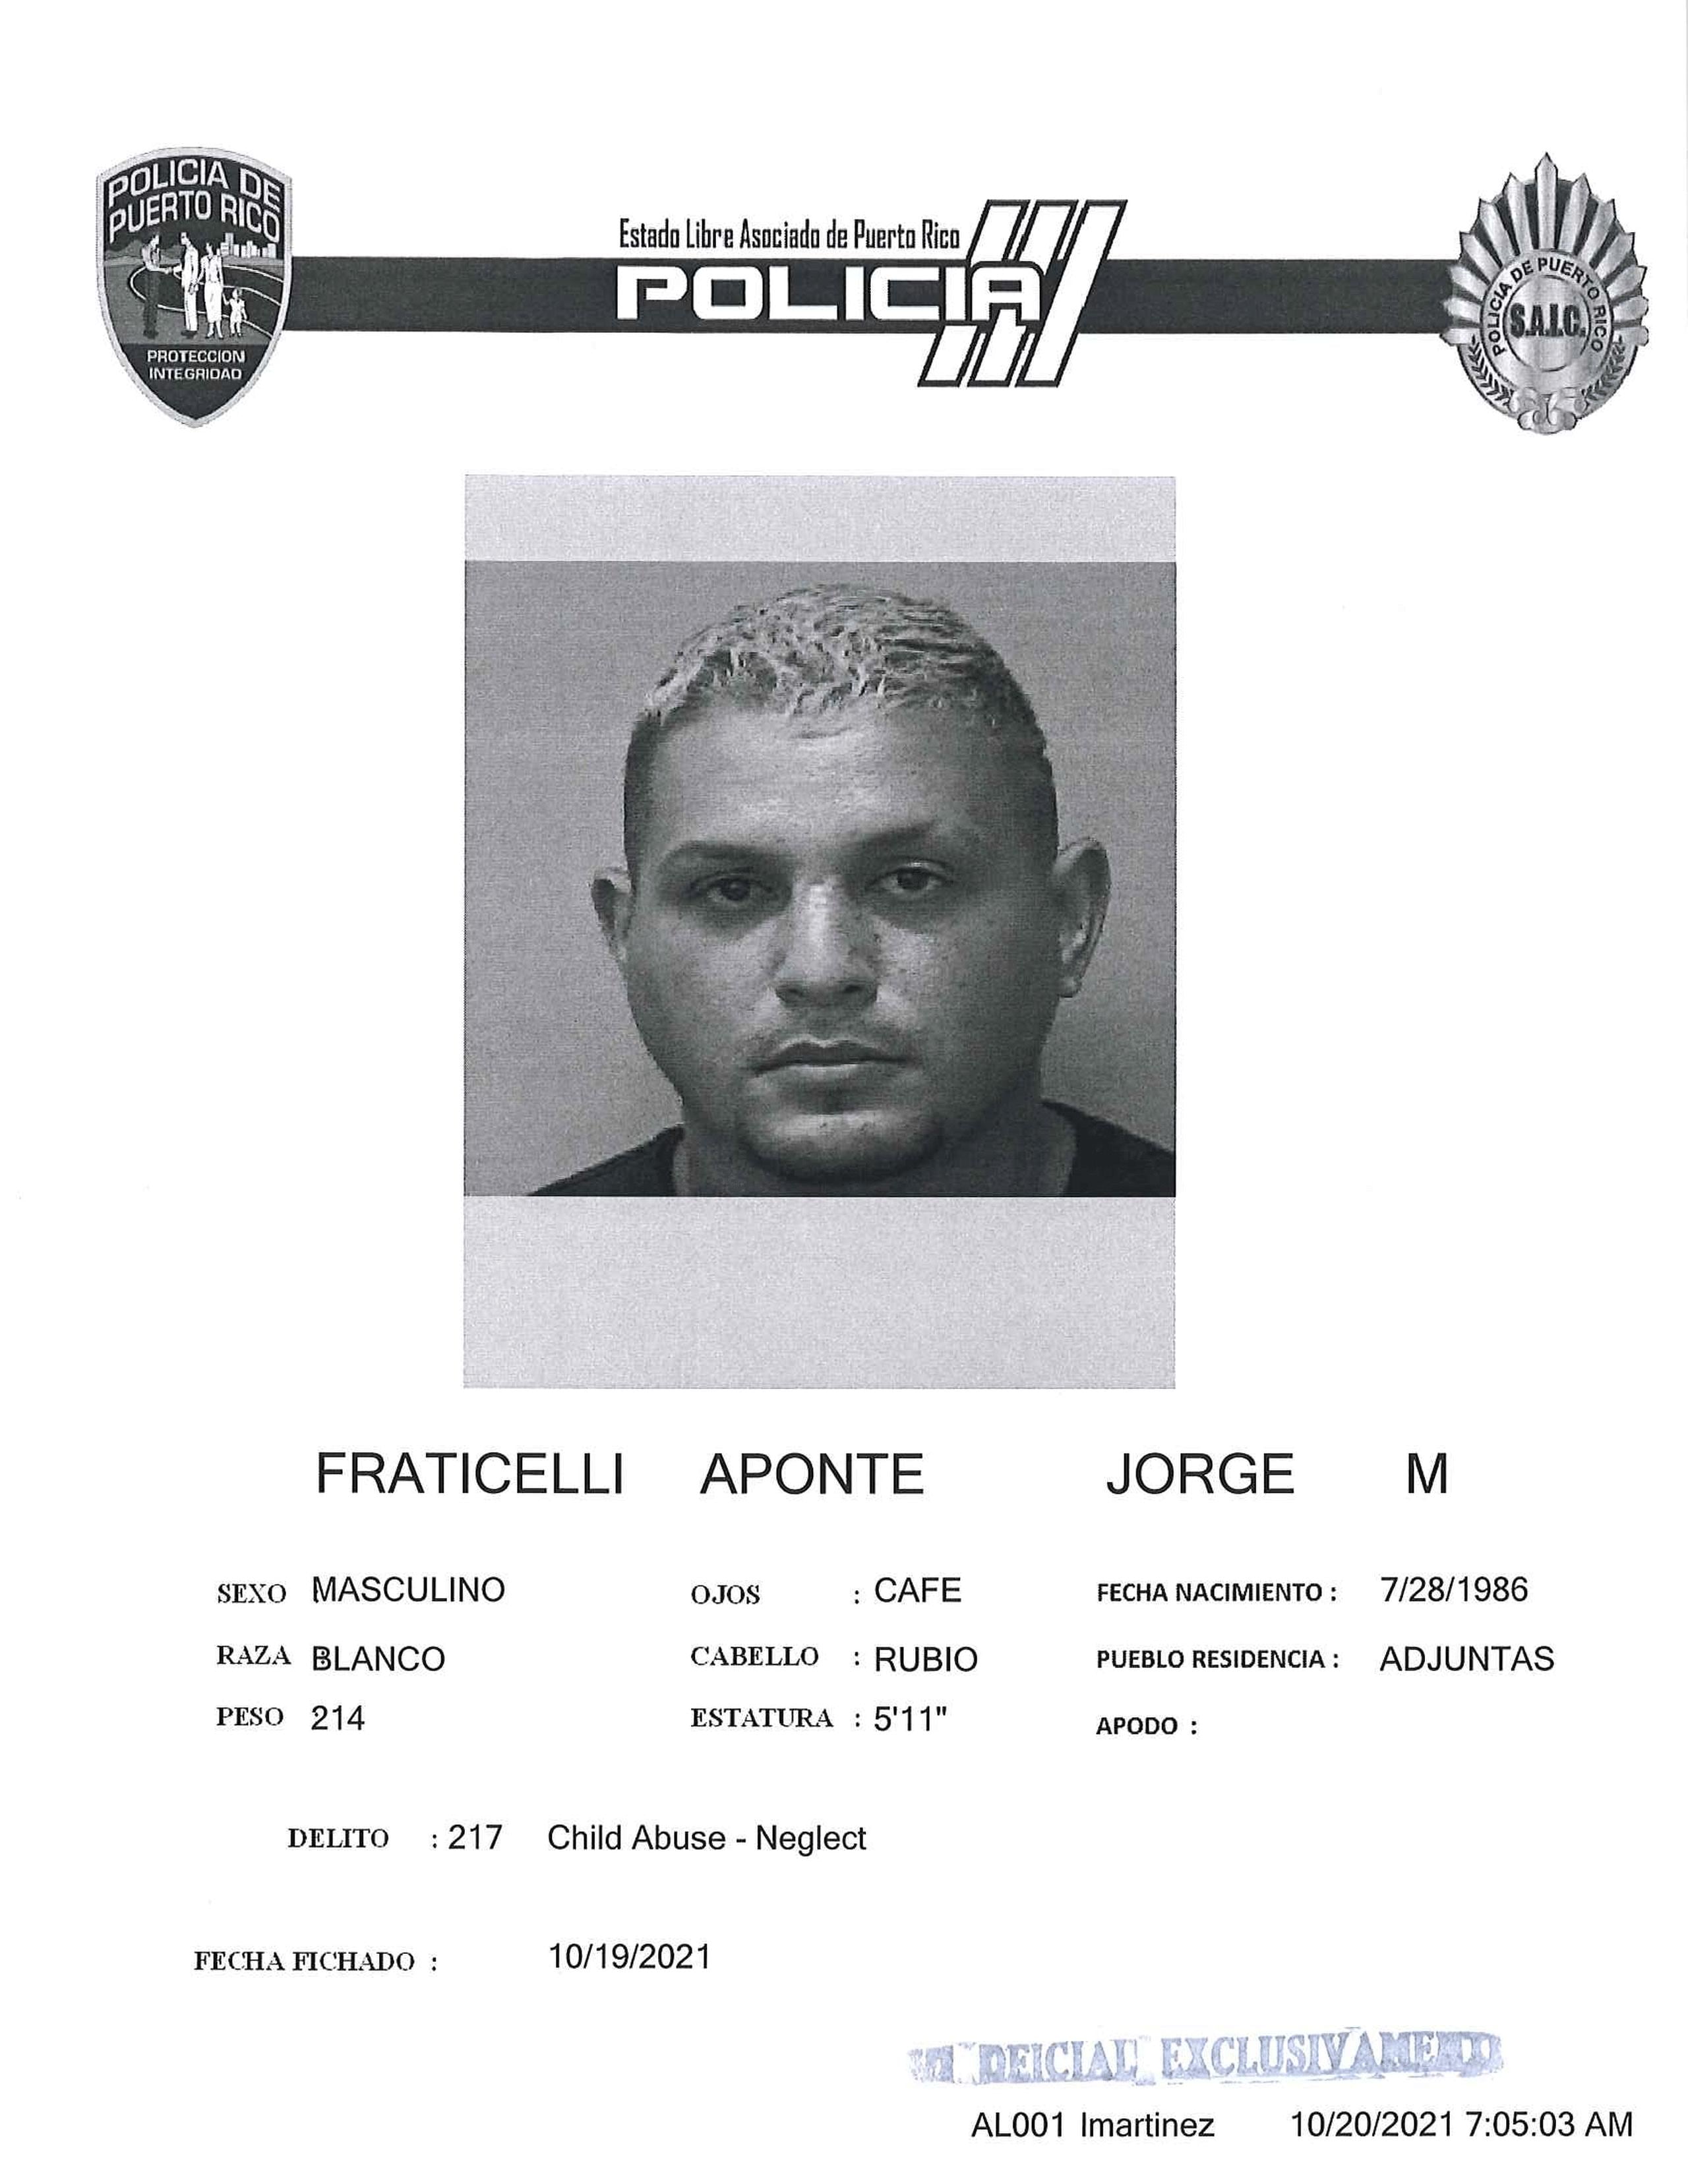 Ficha policíaca de Jorge Manuel Fraticelli Aponte.